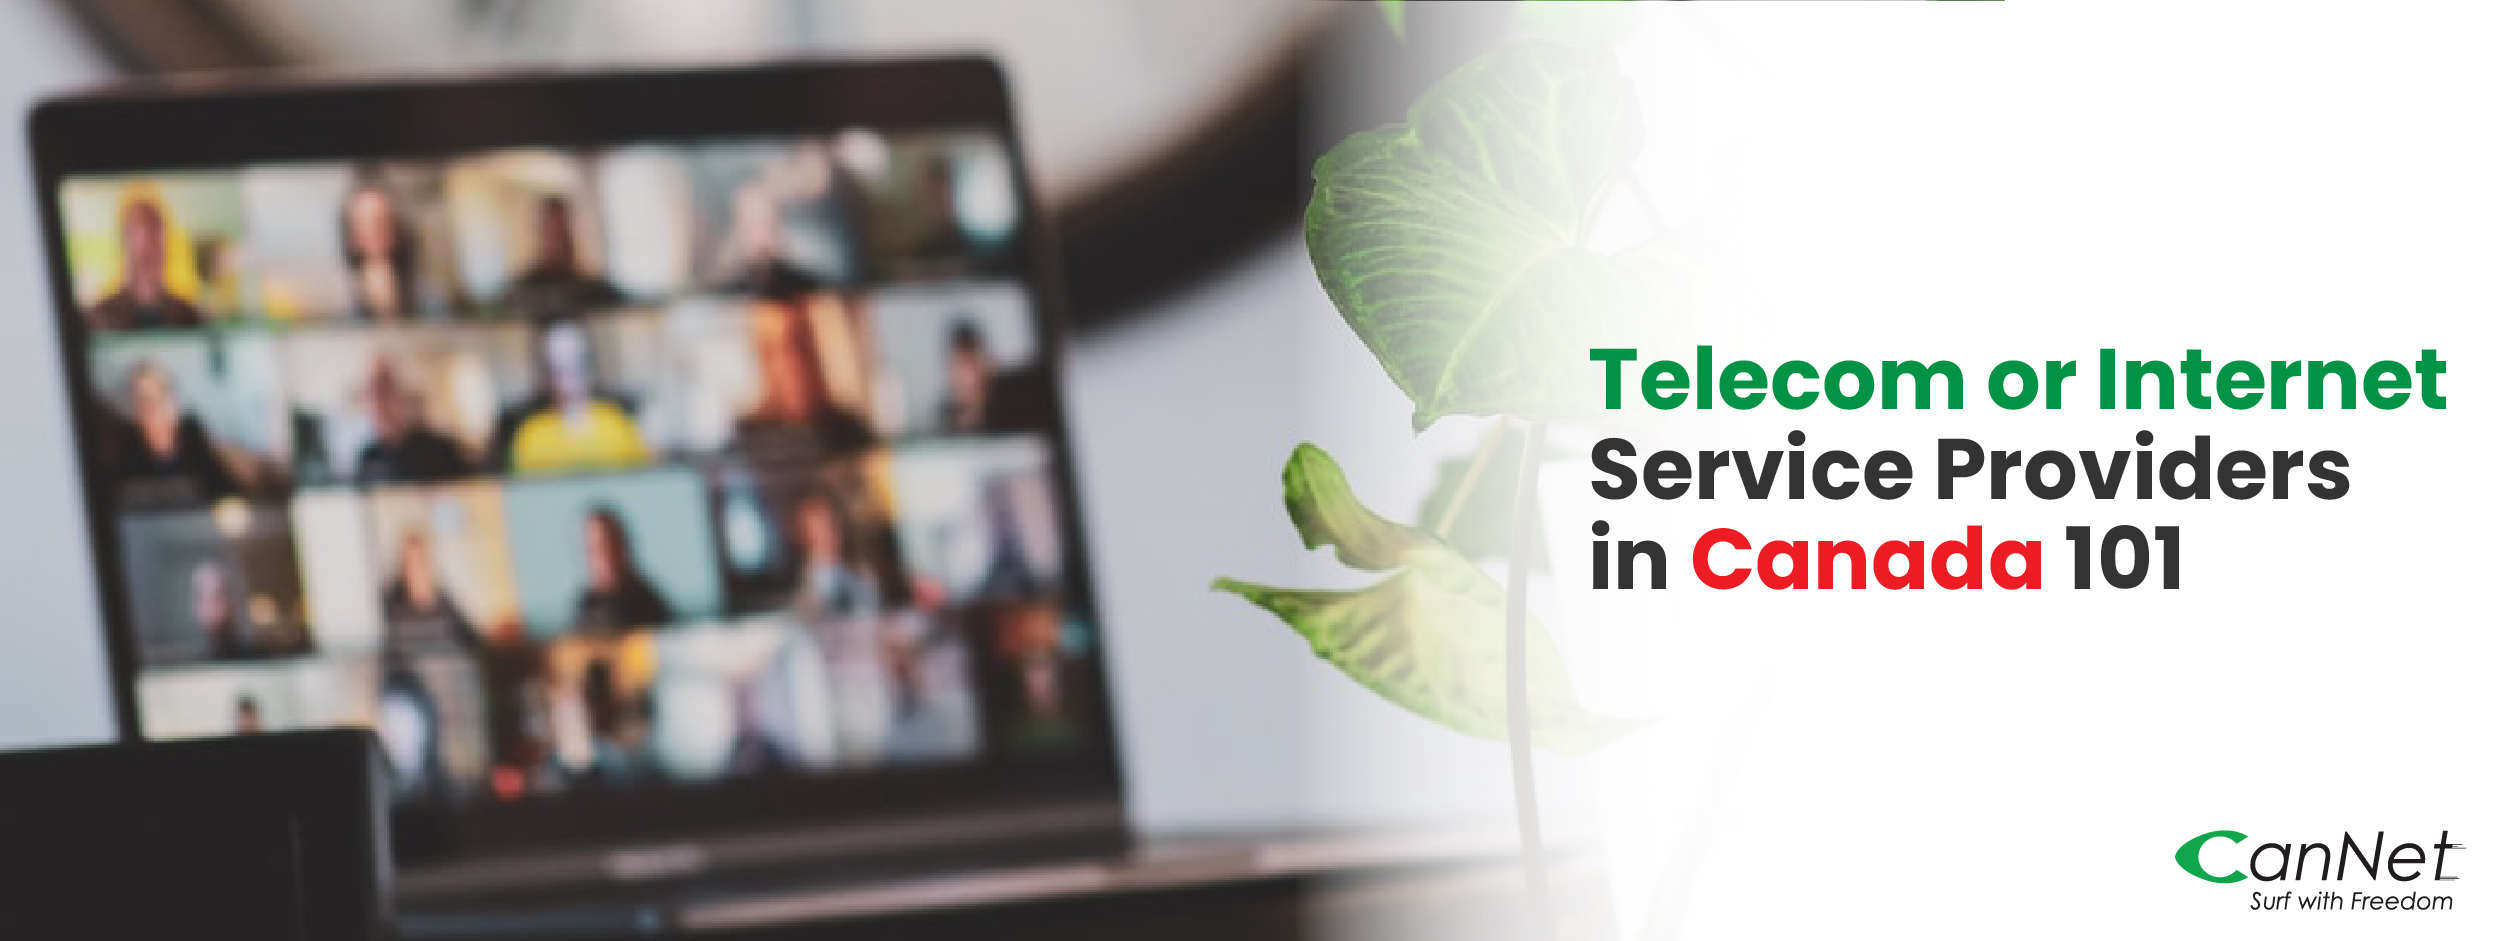 Telecom or Internet Service Providers in Canada 101